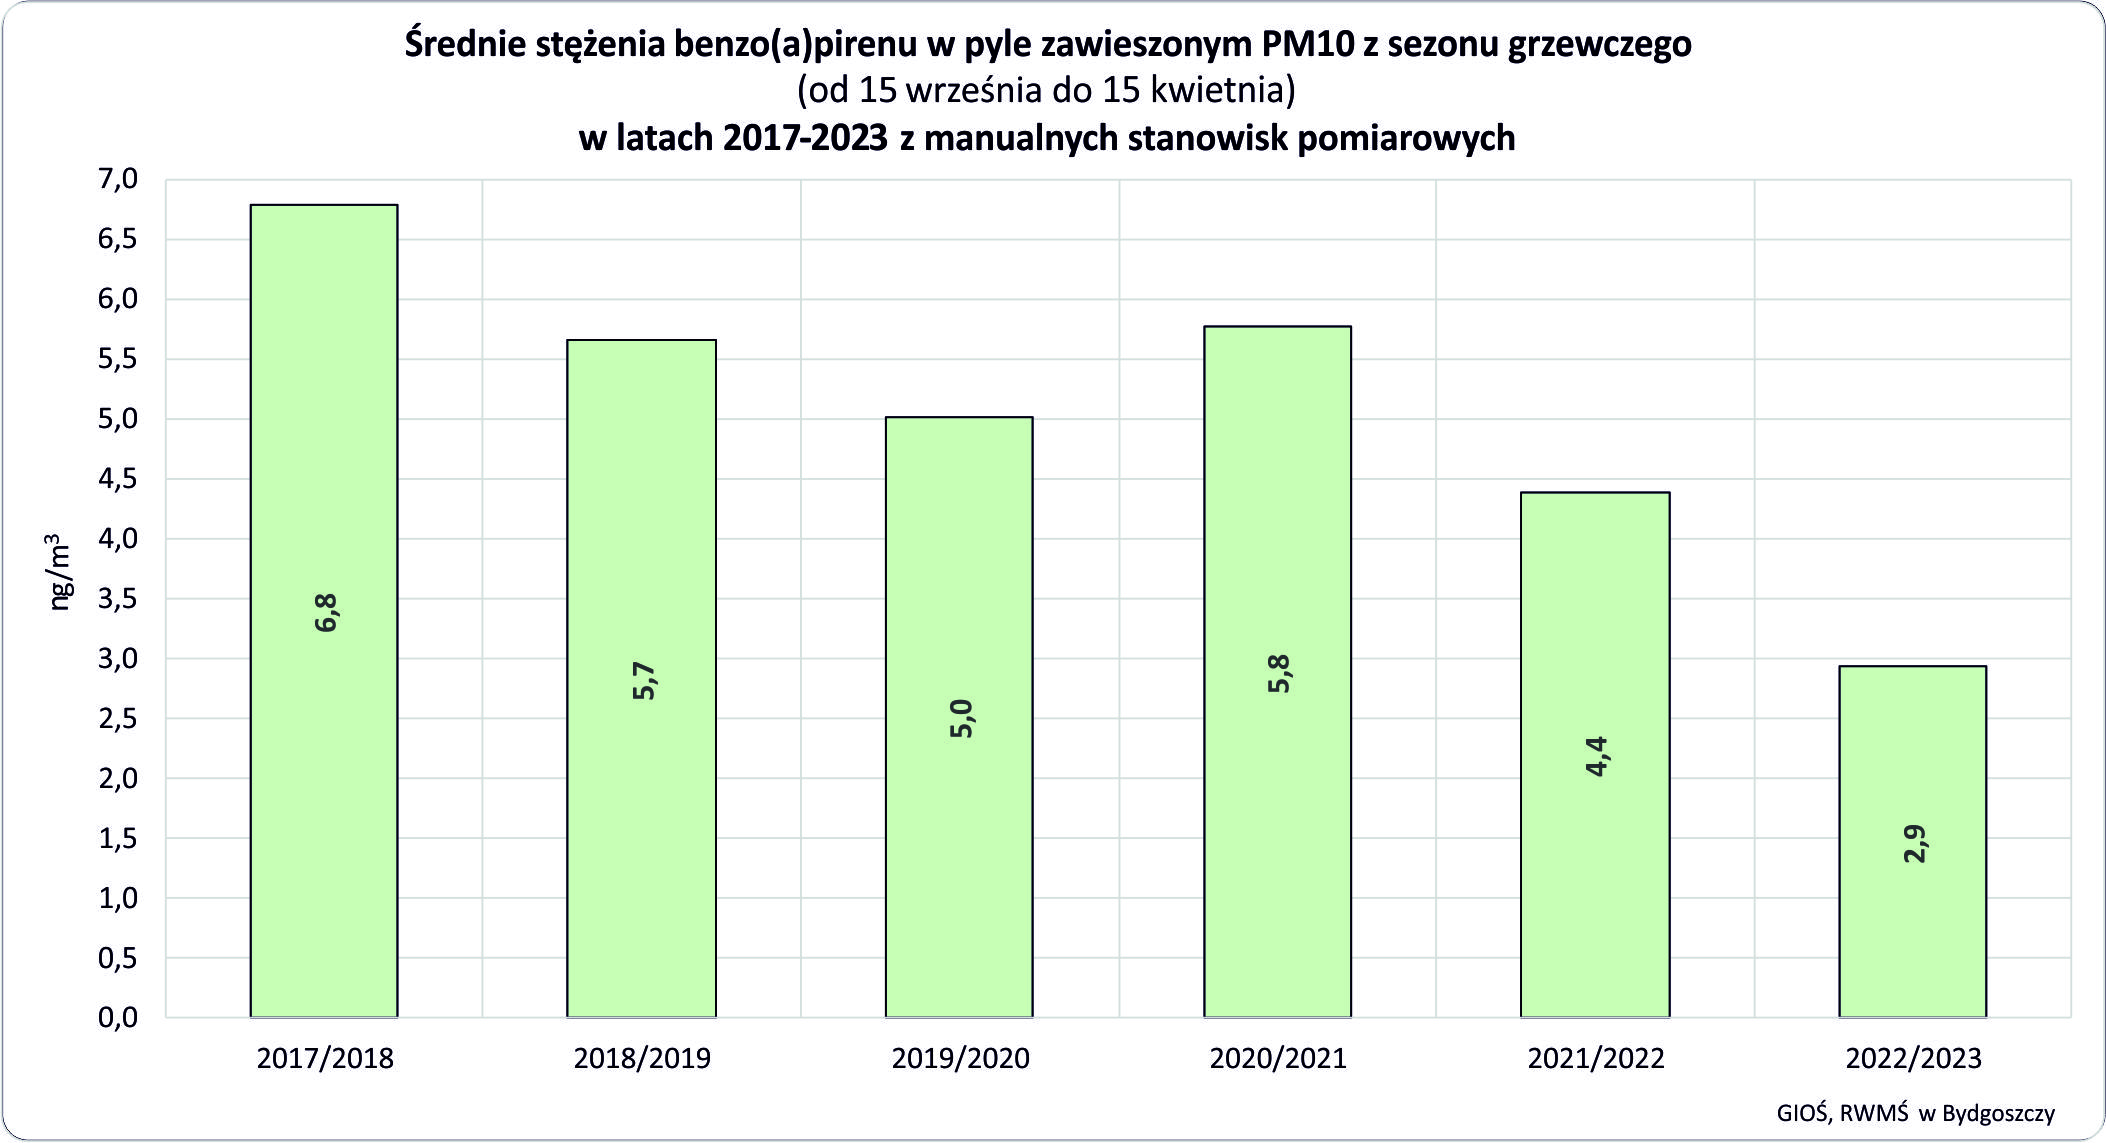 Średnie stężenia benzo(a)pirenu w pyle PM10 z sezonu grzewczego w latach 2017-2023 - trend spadkowy z 6,8  do 2,9